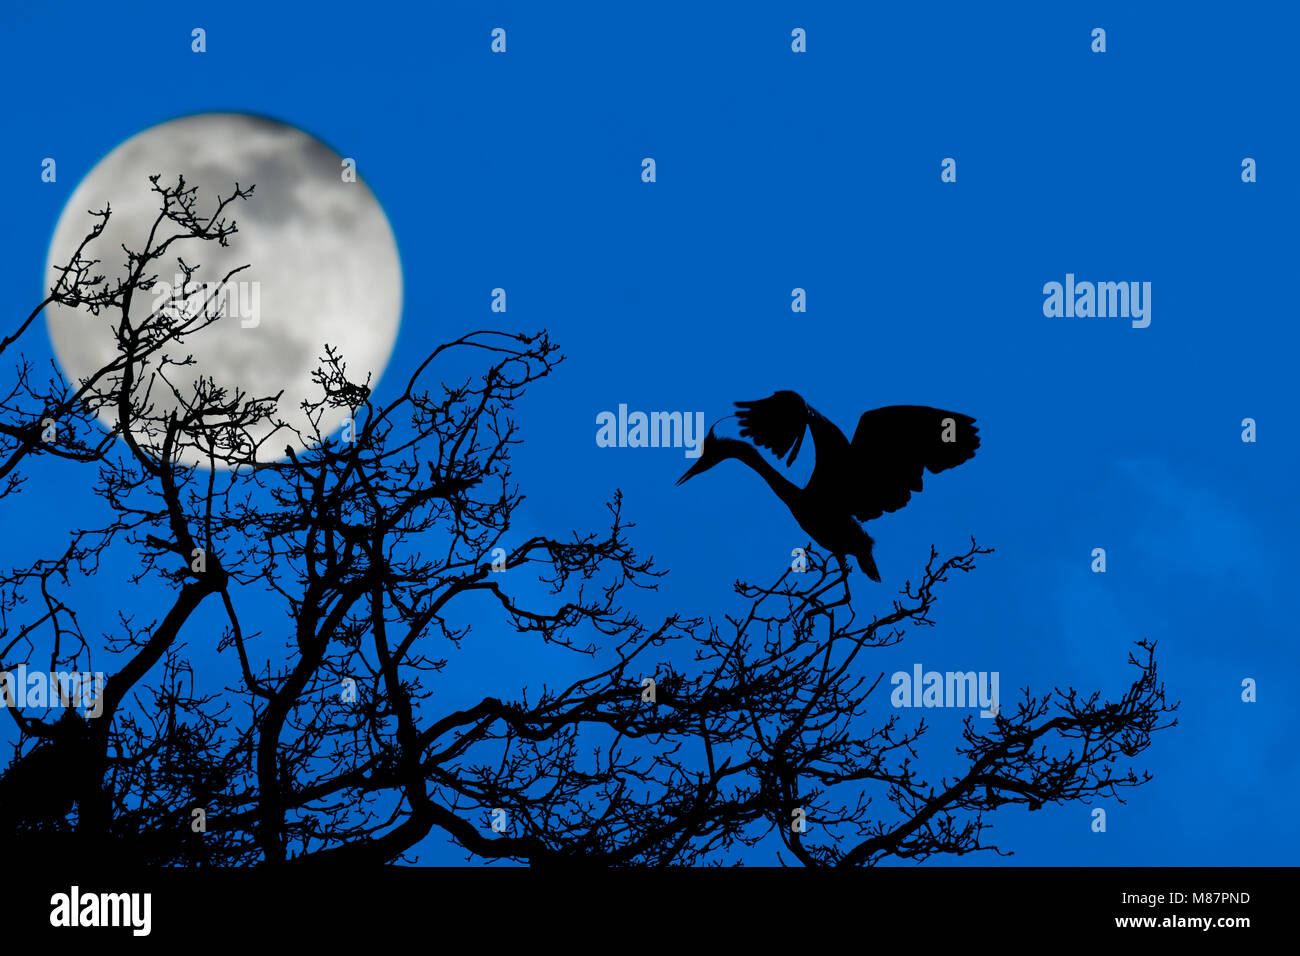 Graureiher (Ardea cinerea) Landung auf Nest in an heronry/Reiher rookery Silhouette in der Nacht bei Vollmond im Frühling Stockfoto